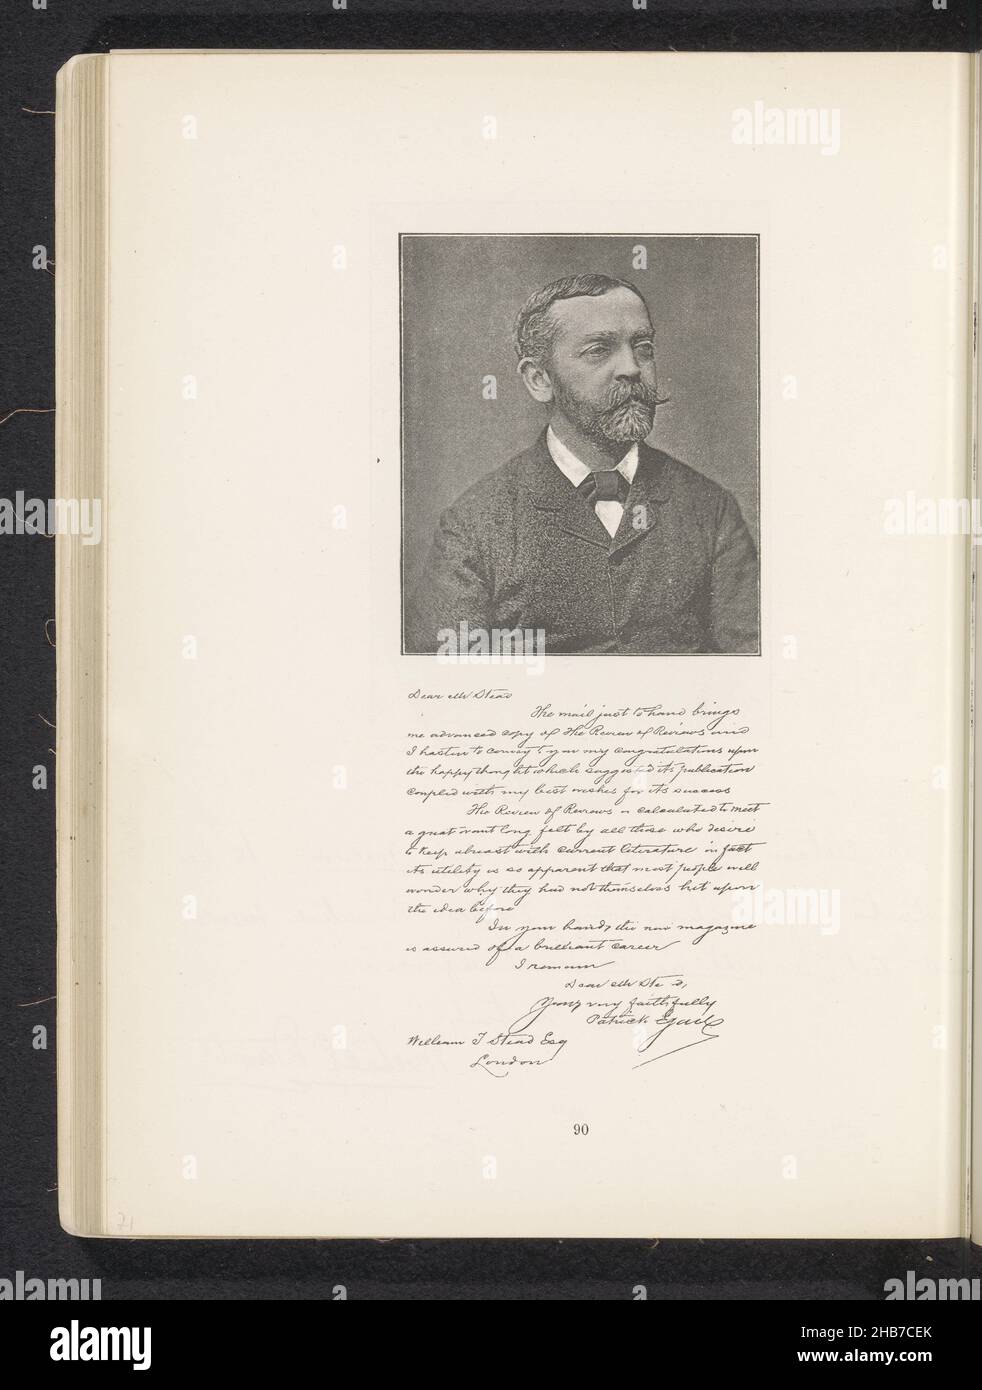 Porträt von Patrick Egan, Hersteller: Anonym, c. 1881 - in oder vor 1891, Papier, Höhe 88 mm × Breite 76 mm Stockfoto